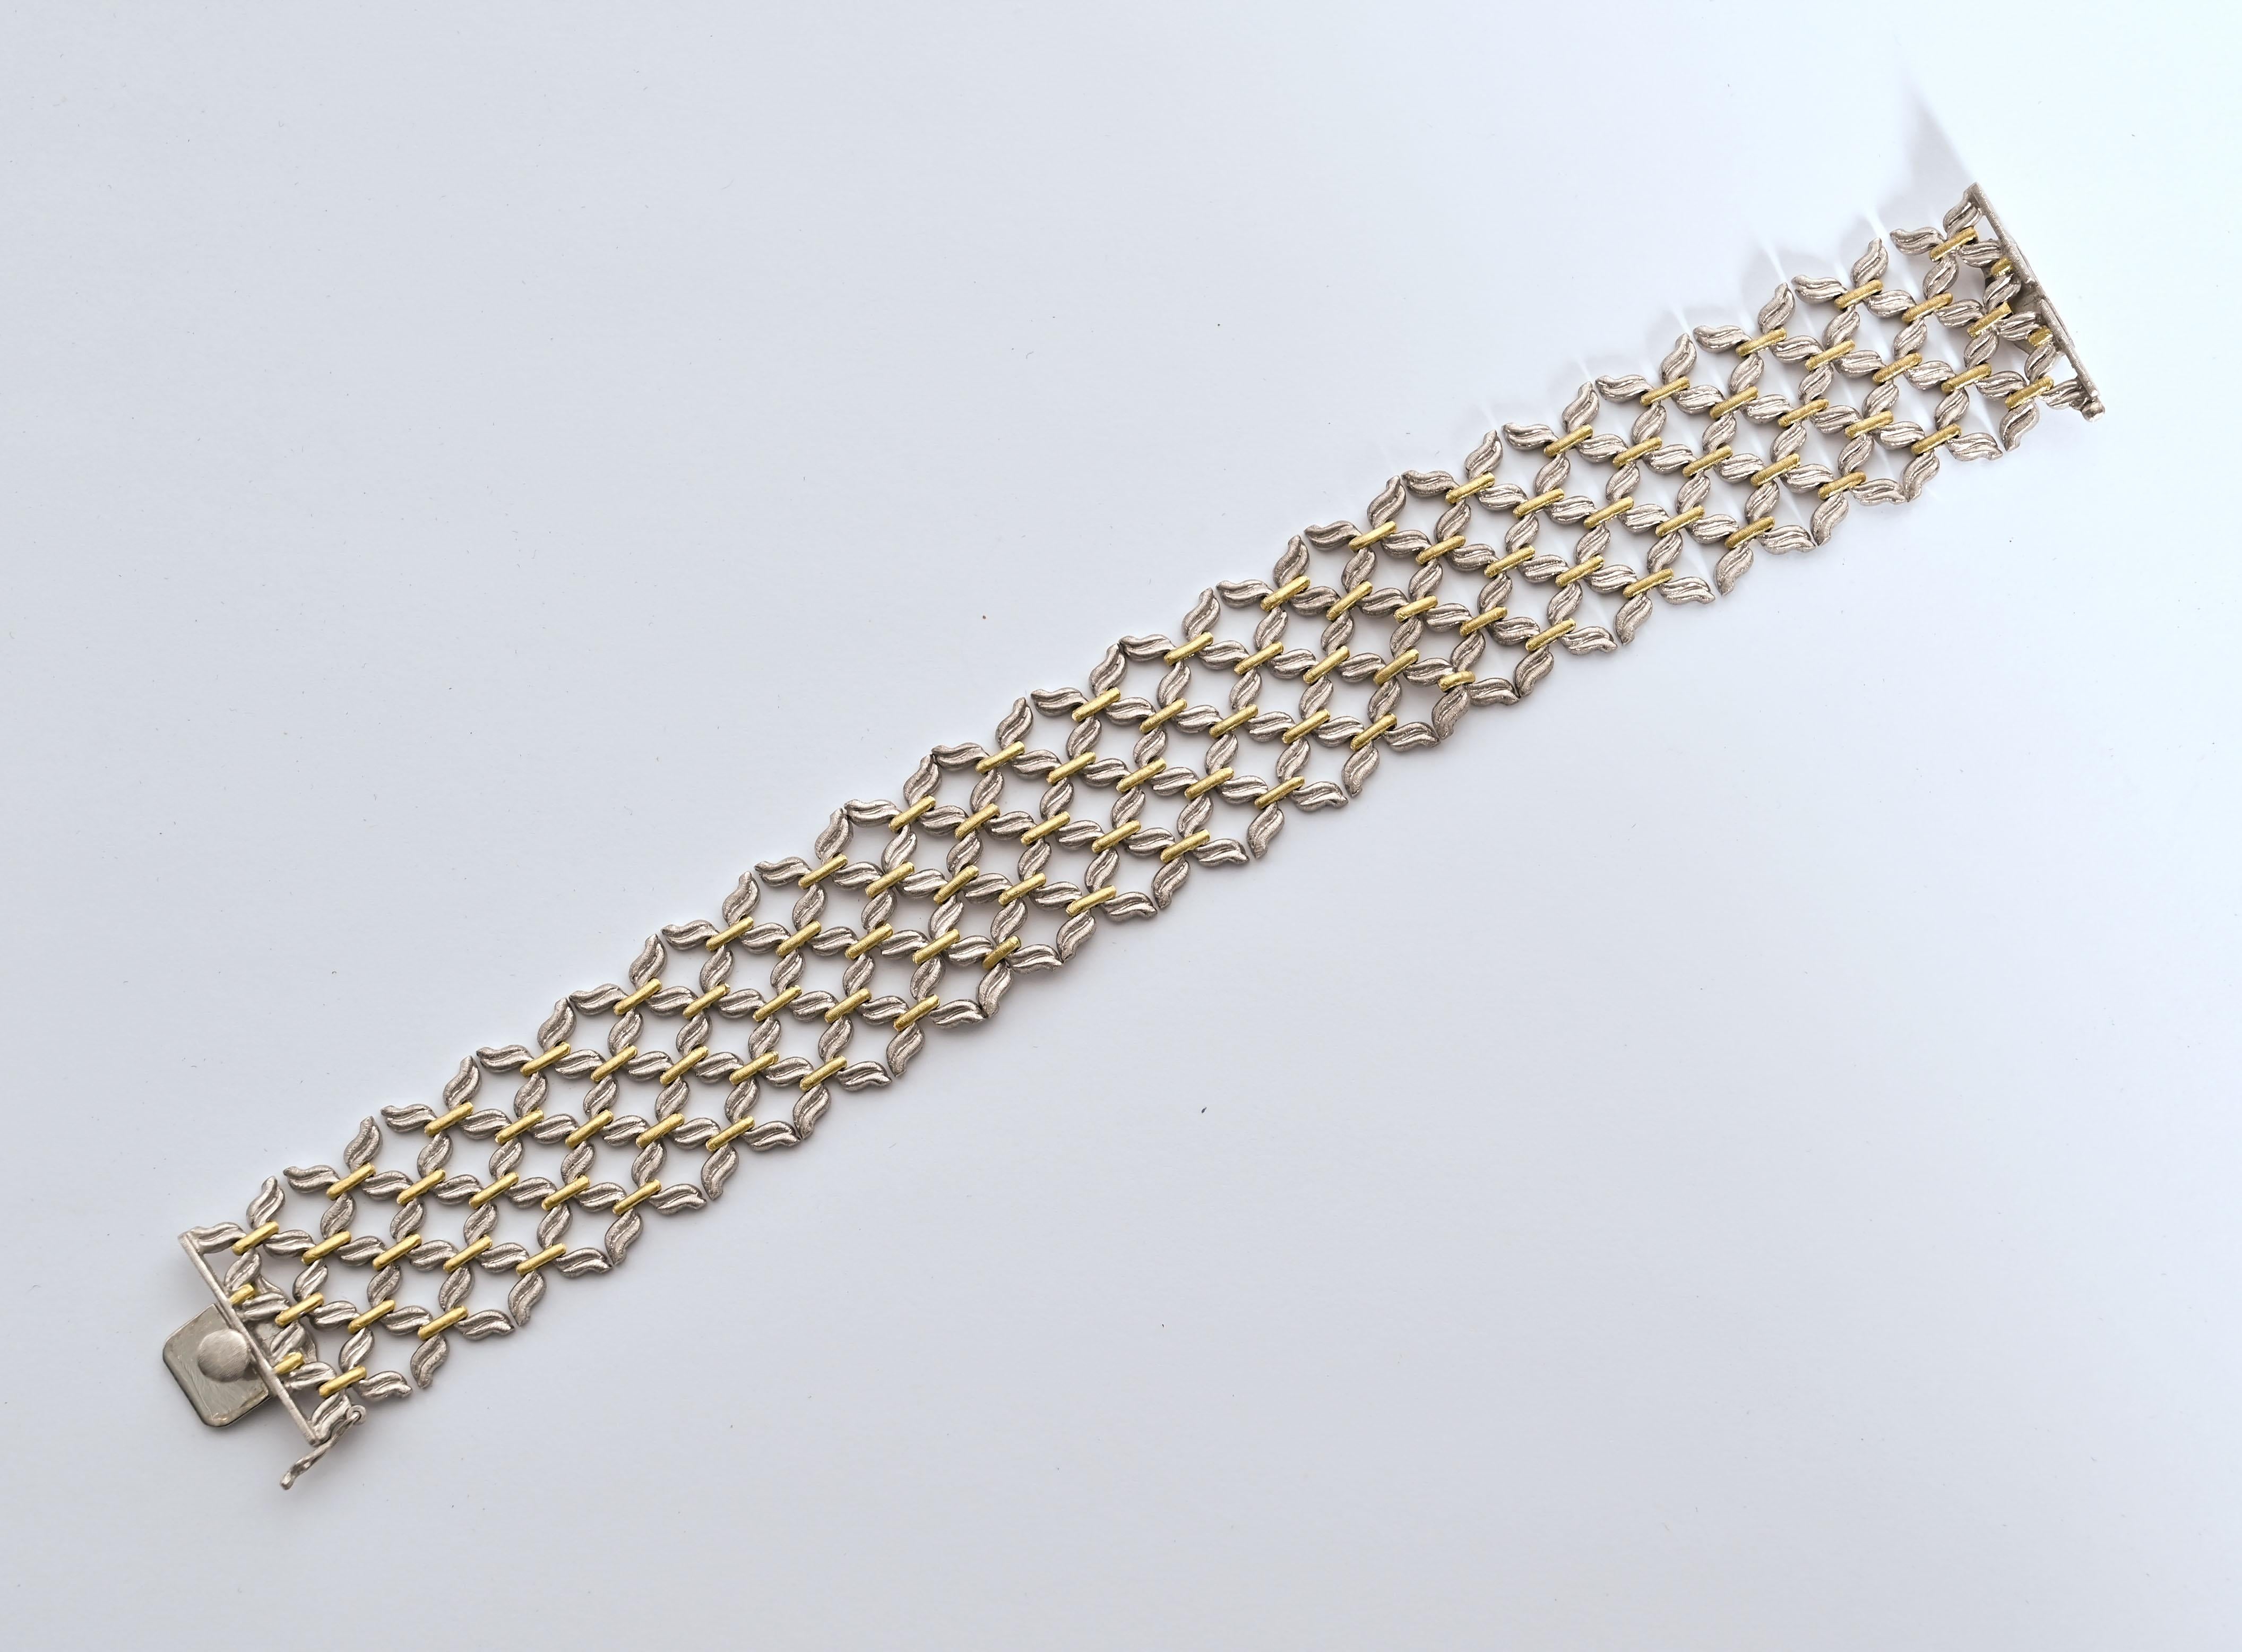 Bracelet à maillons délicats et finement réalisés par Gianmaria Buccellati. Des maillons incurvés en or blanc alternent avec des barres droites en or jaune pour créer un motif tissé inhabituel. Le bracelet est large de 7/8